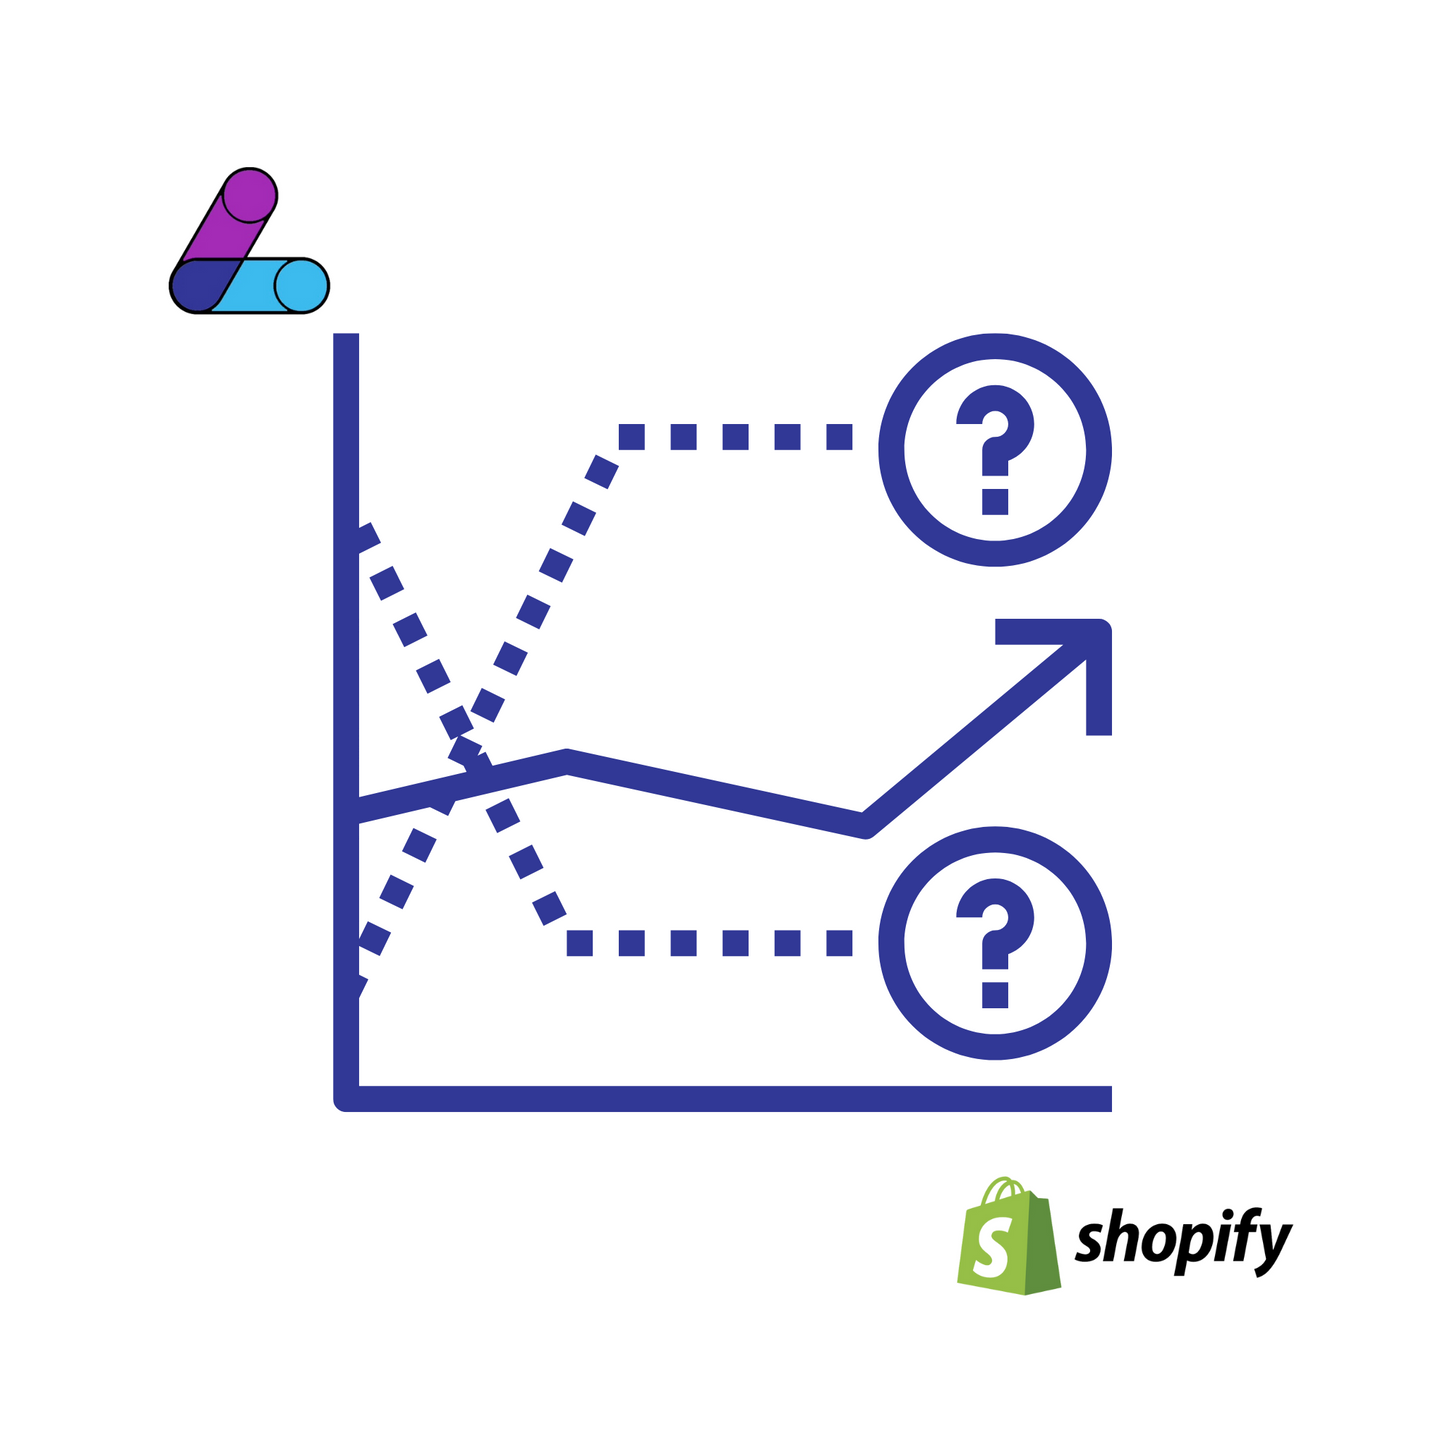 Shopify Forecasting